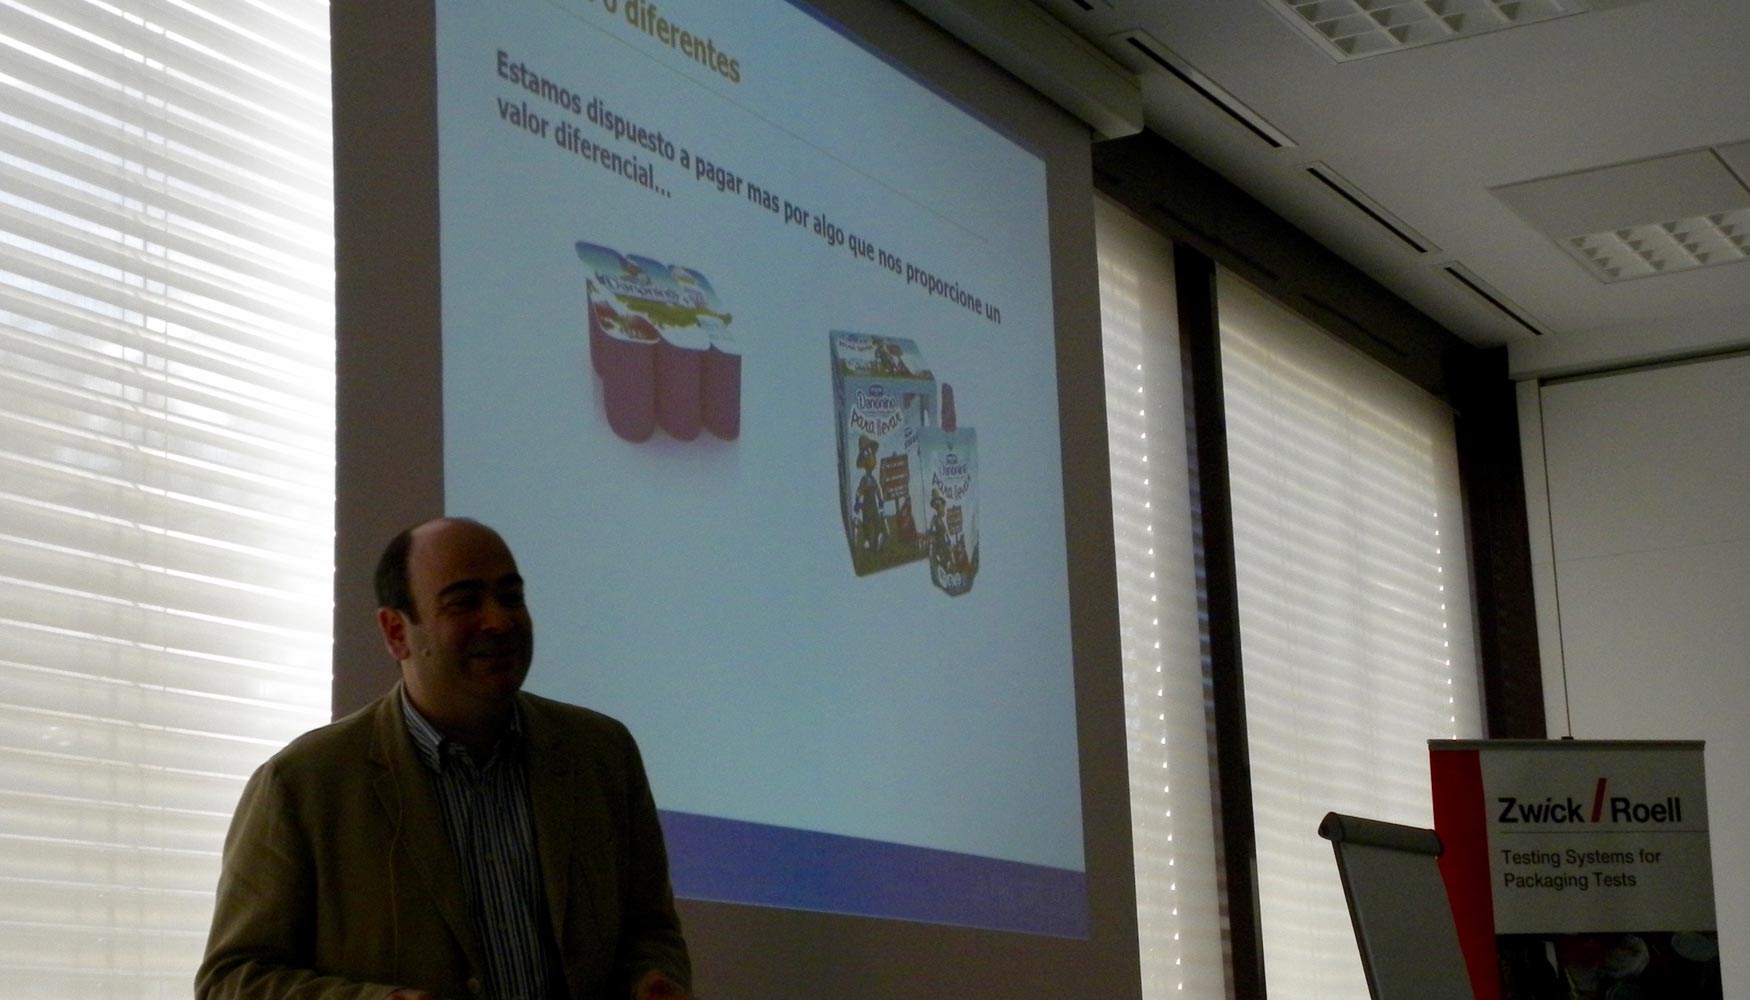 Sergio Gimnez, de Aimplas, habl durante su intervencin sobre las tendencias en el sector del packaging